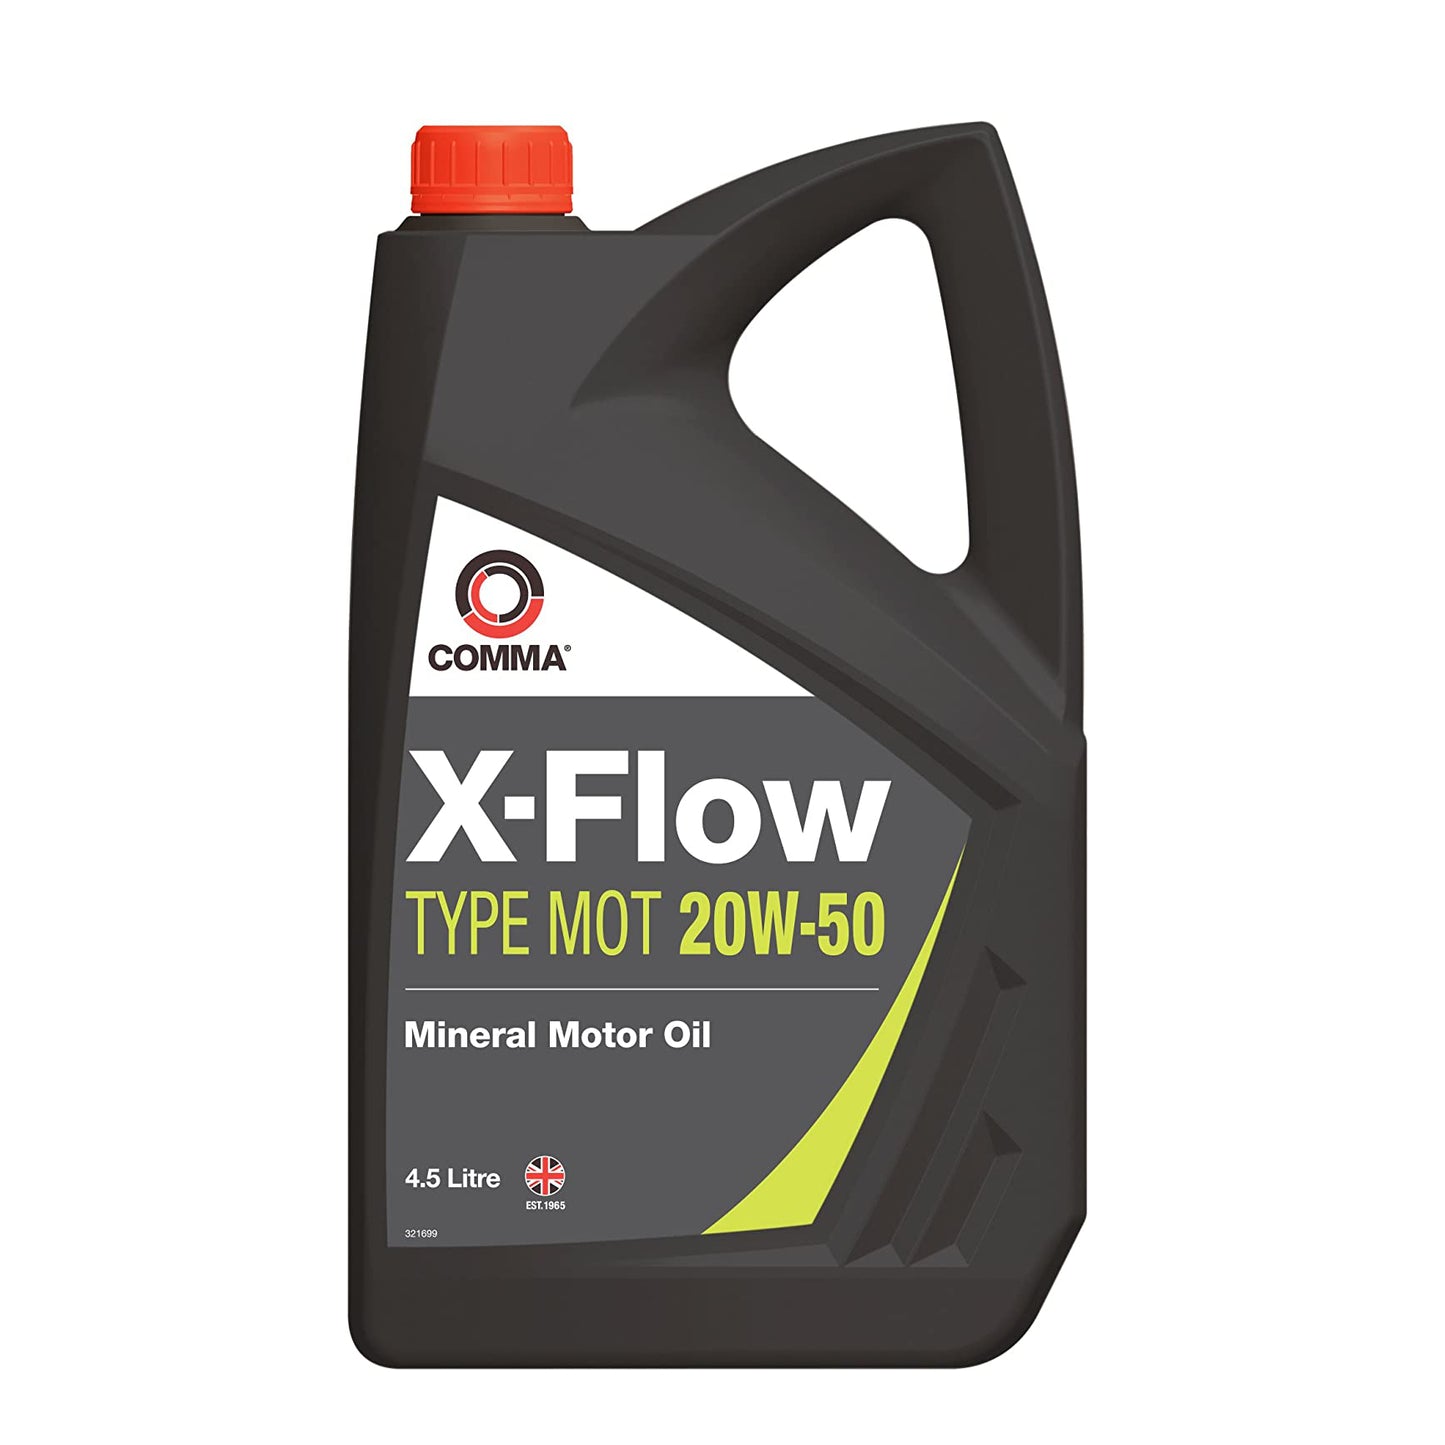 Comma X-Flow MOT 20W-50